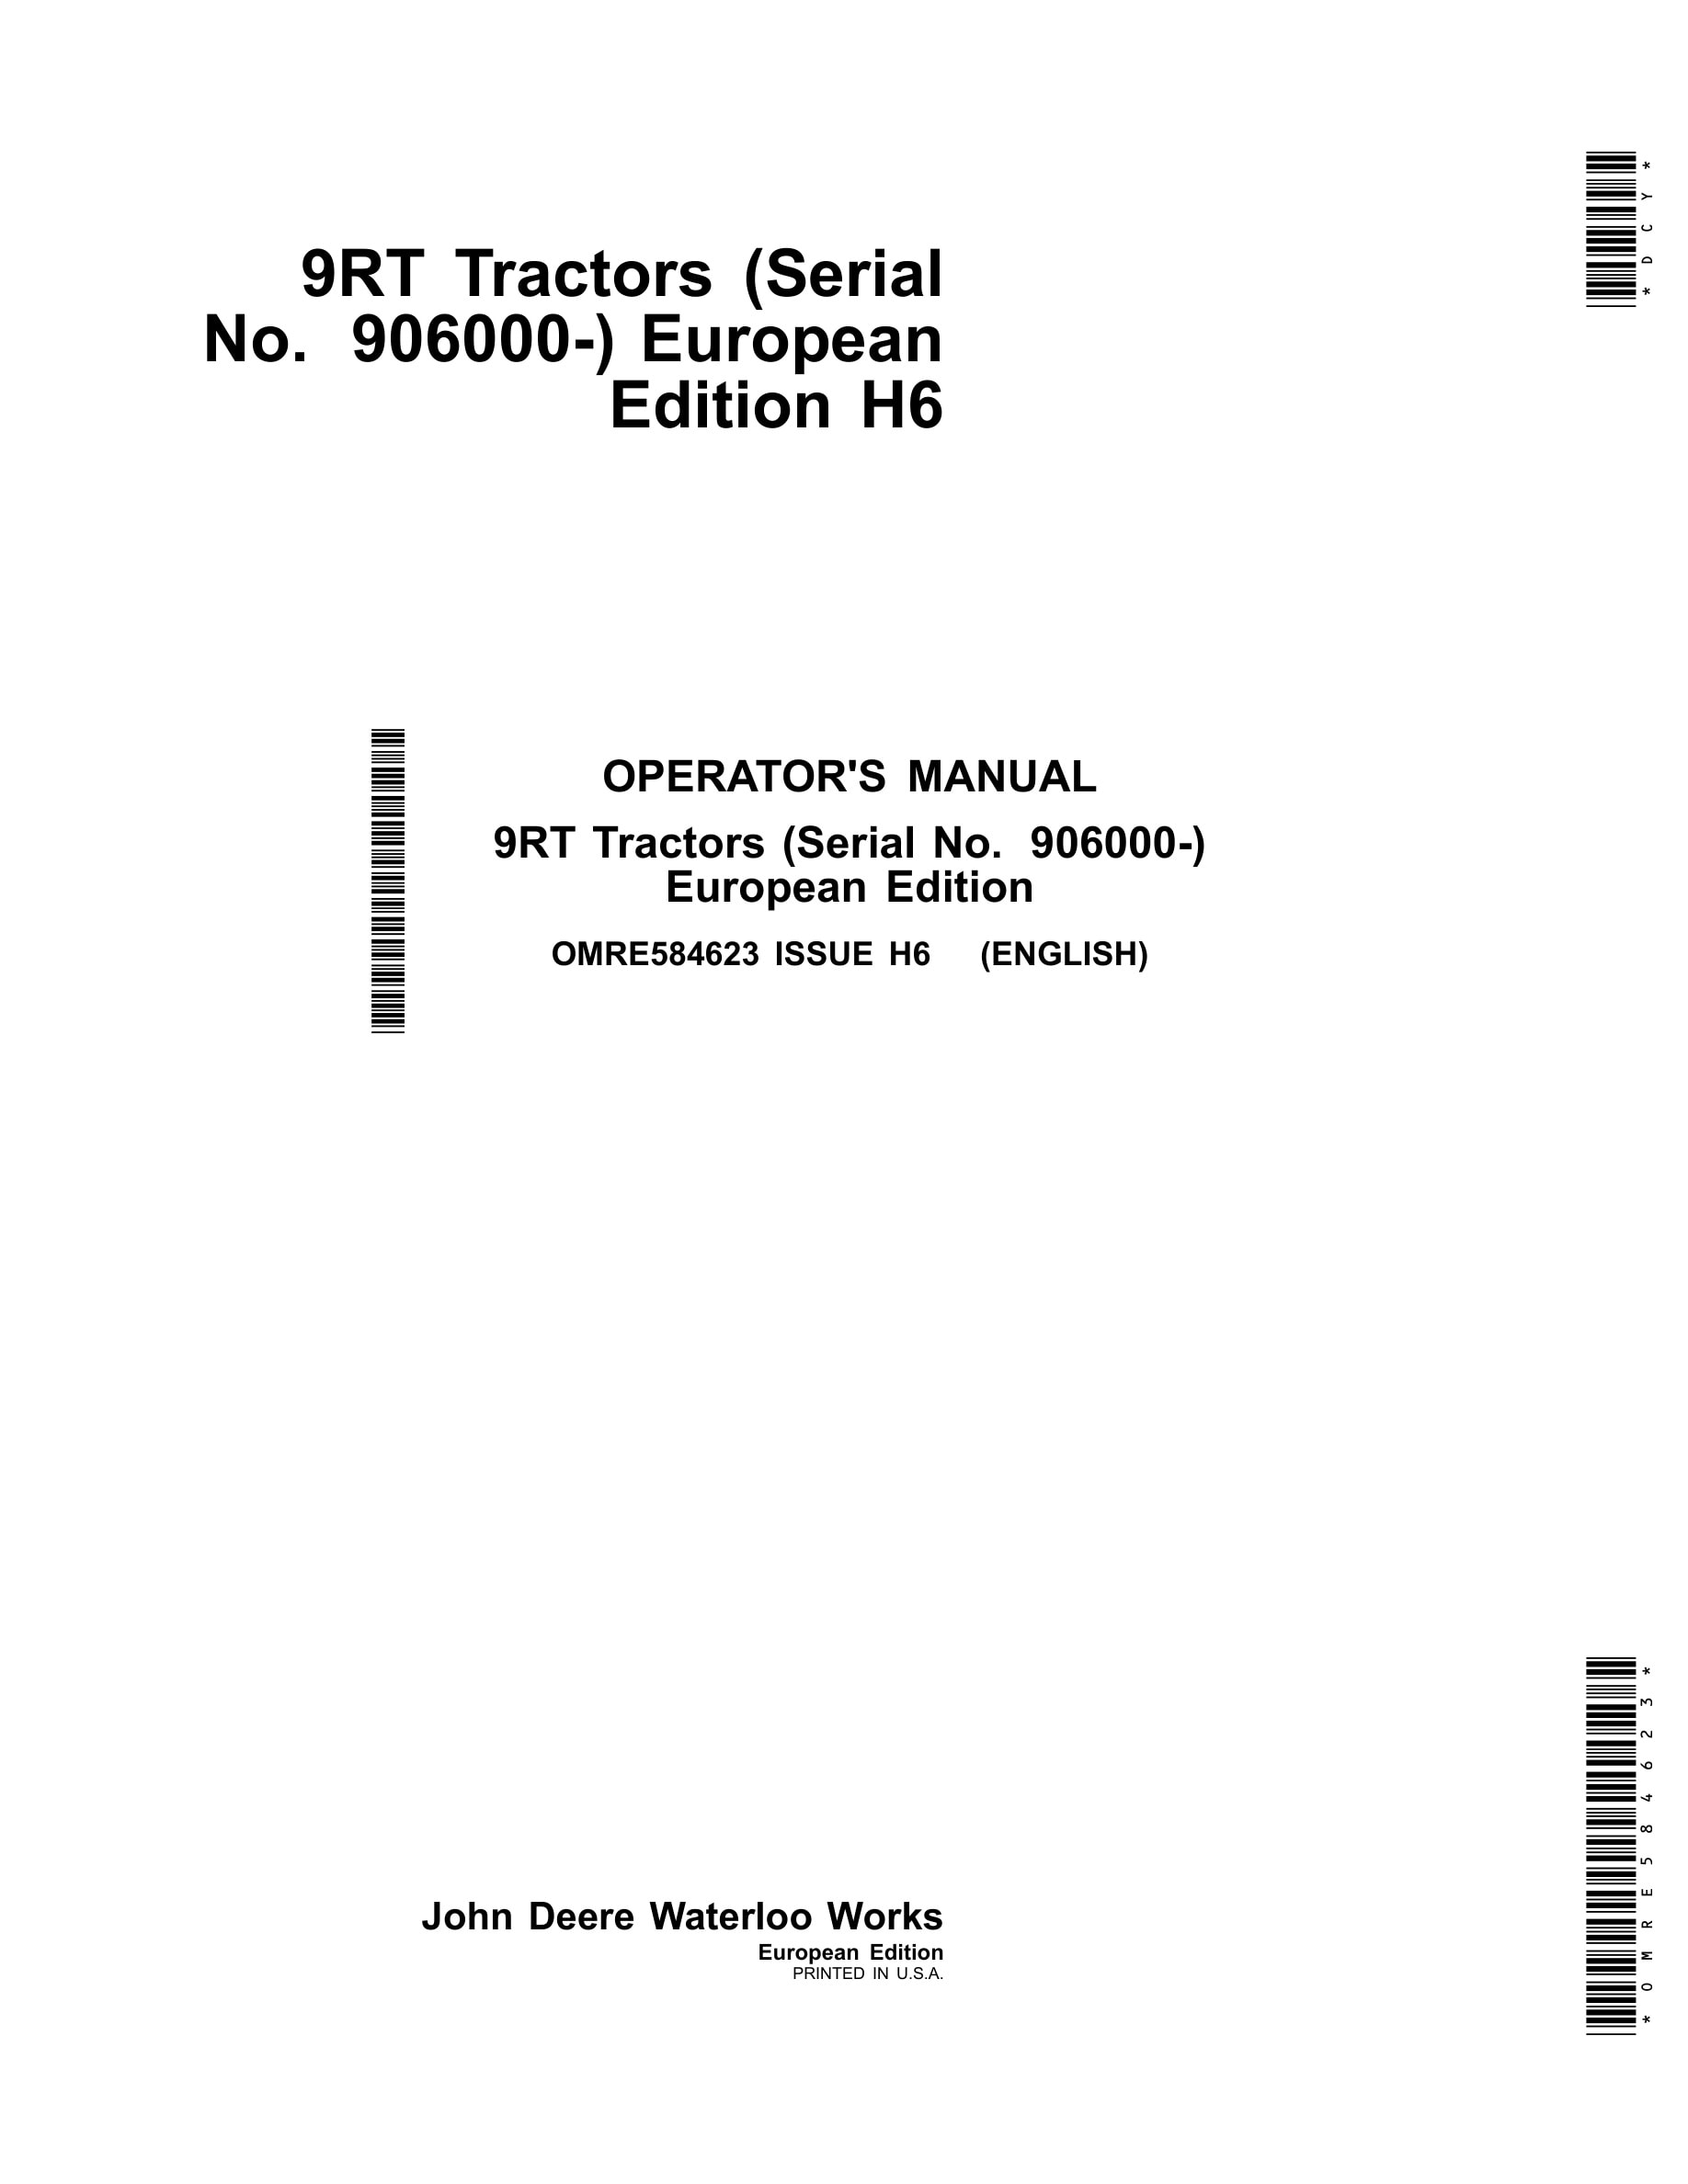 John Deere 9rt Tractors Operator Manuals OMRE584623-1